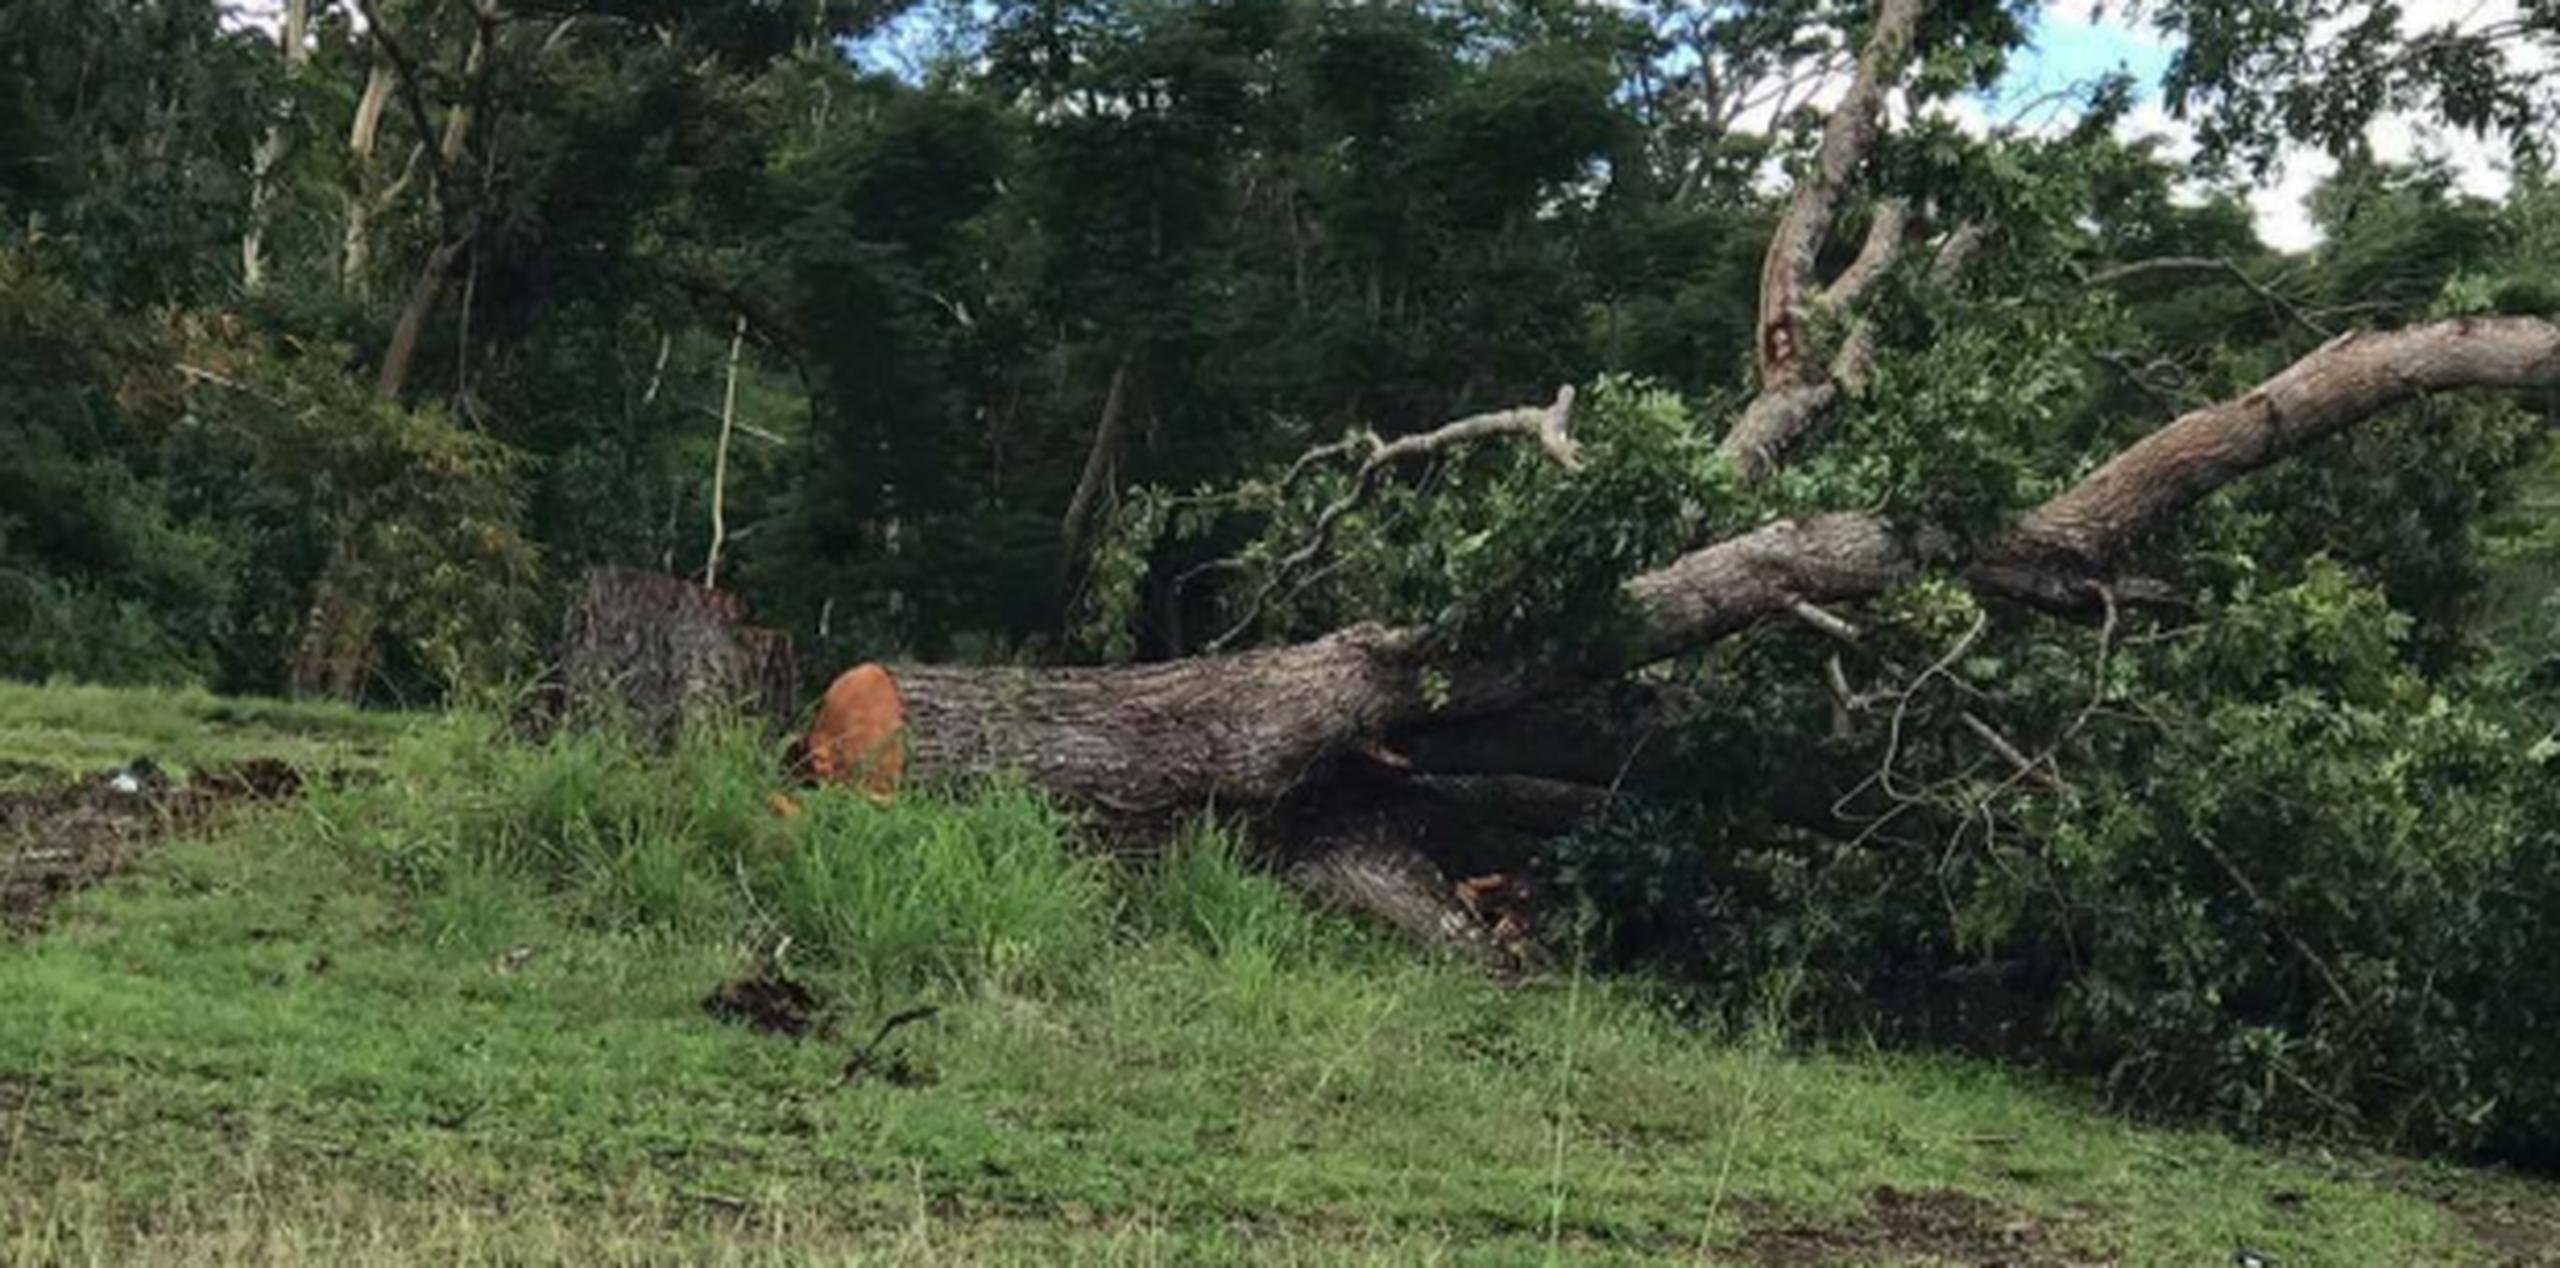 Según la denuncia de Marta Villares, la tala de los árboles fue realizada por la compañía Debris en la carretera PR-30. (Facebook)